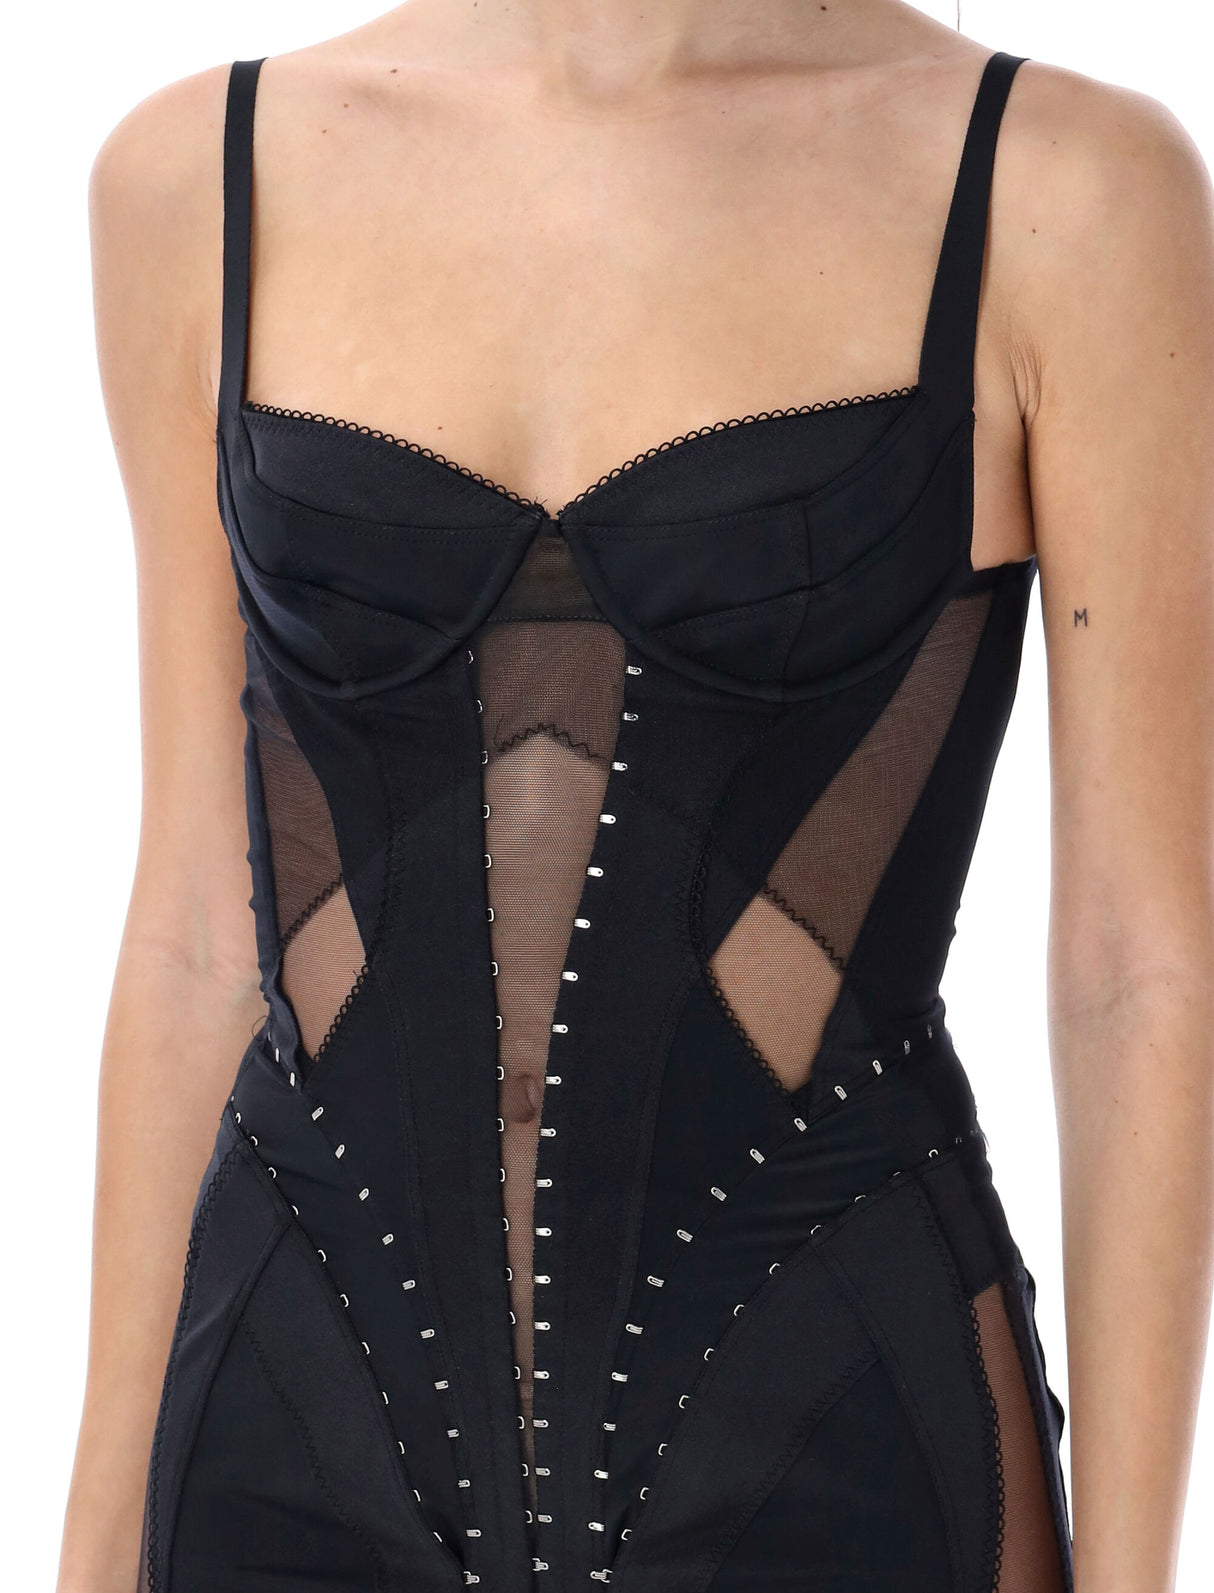 Váy corset đen gợi cảm và quyến rũ - SS24